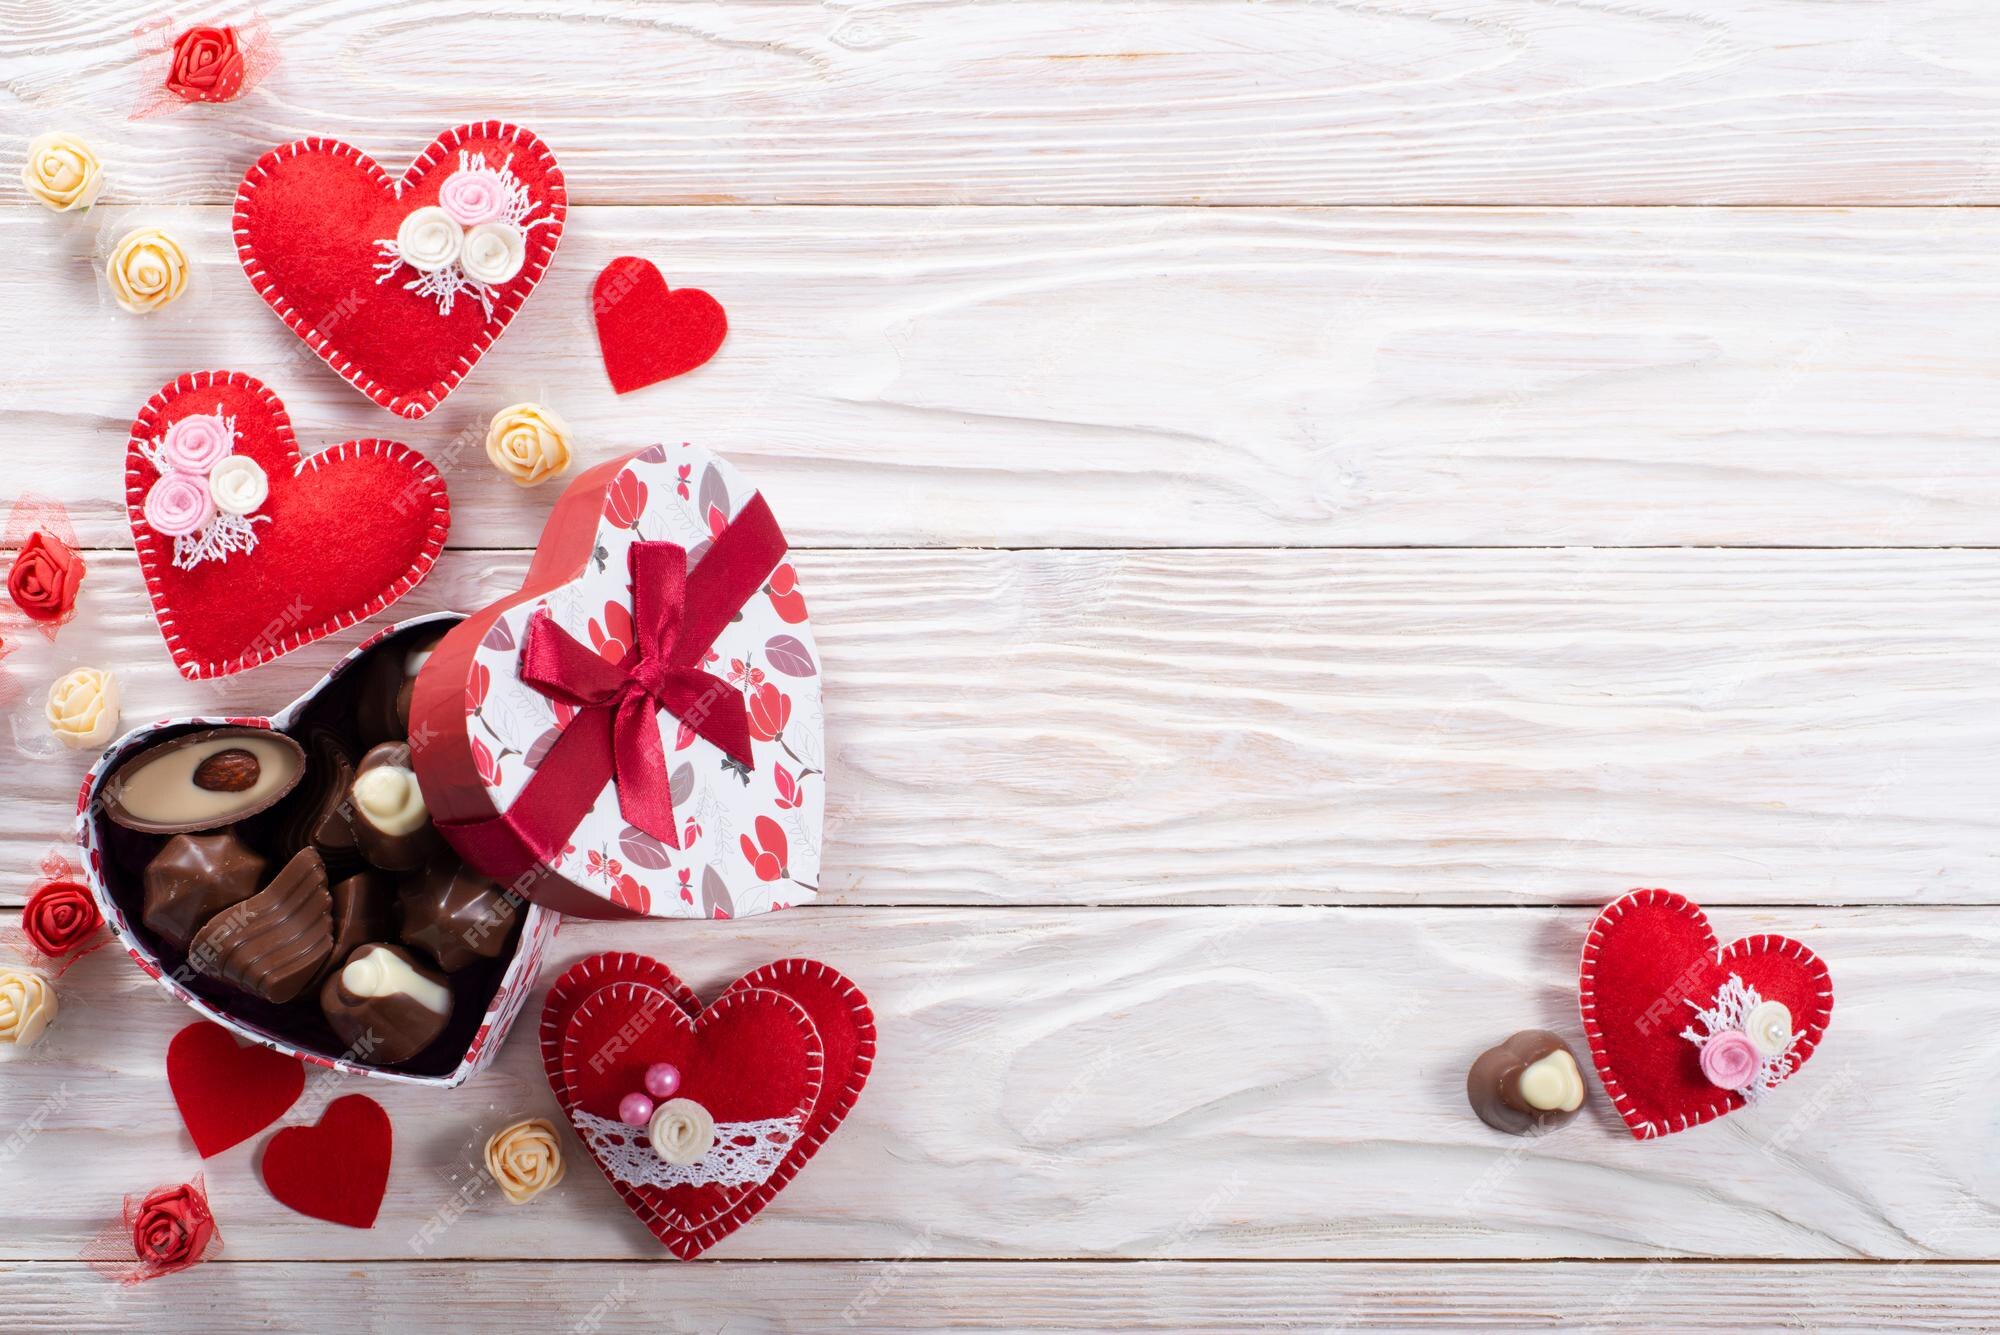 Hộp Sô Cô La: Hộp sô cô la hình trái tim được đặt trên nền gỗ trắng sẽ khiến cho bạn thèm muốn ngay lập tức. Ngày Valentine sắp đến, đây sẽ là một món quà hoàn hảo và đầy ý nghĩa dành cho người mà bạn yêu thương nhất. Hãy để bức ảnh này làm cho bạn cảm thấy đầy ngọt ngào và hạnh phúc.